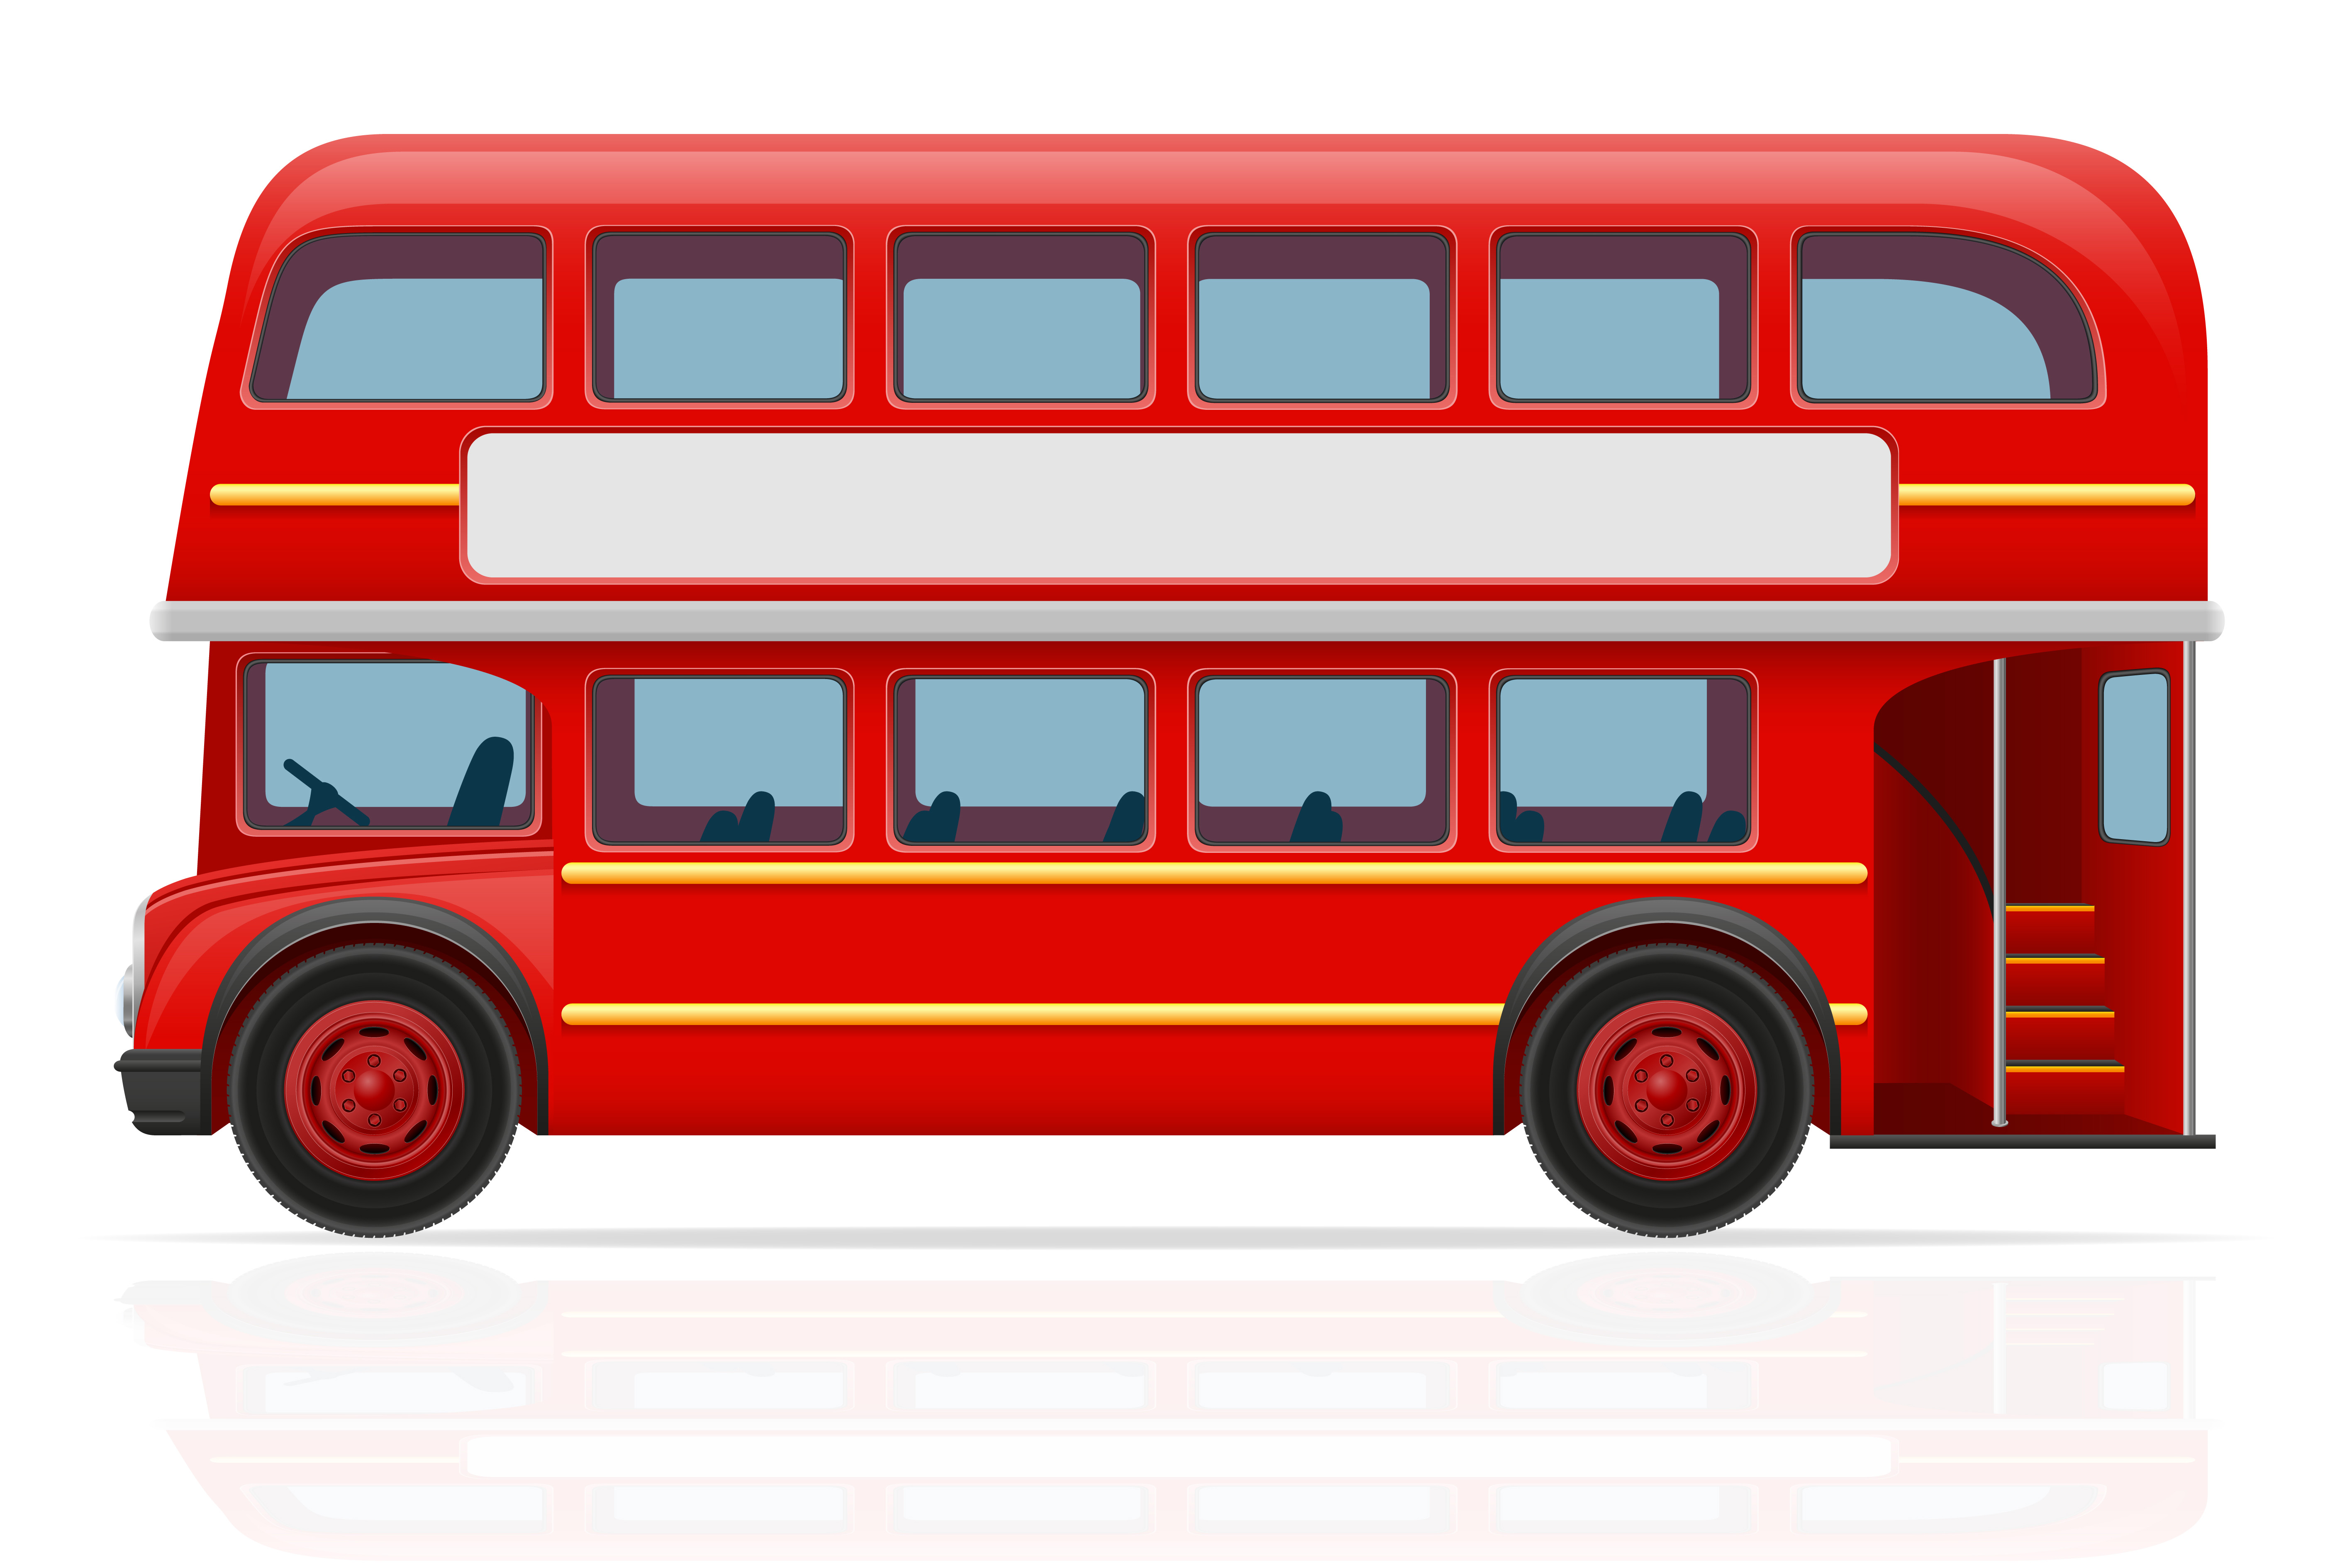 Vet Denken fiets Londen rode bus vectorillustratie 516678 Vectorkunst bij Vecteezy